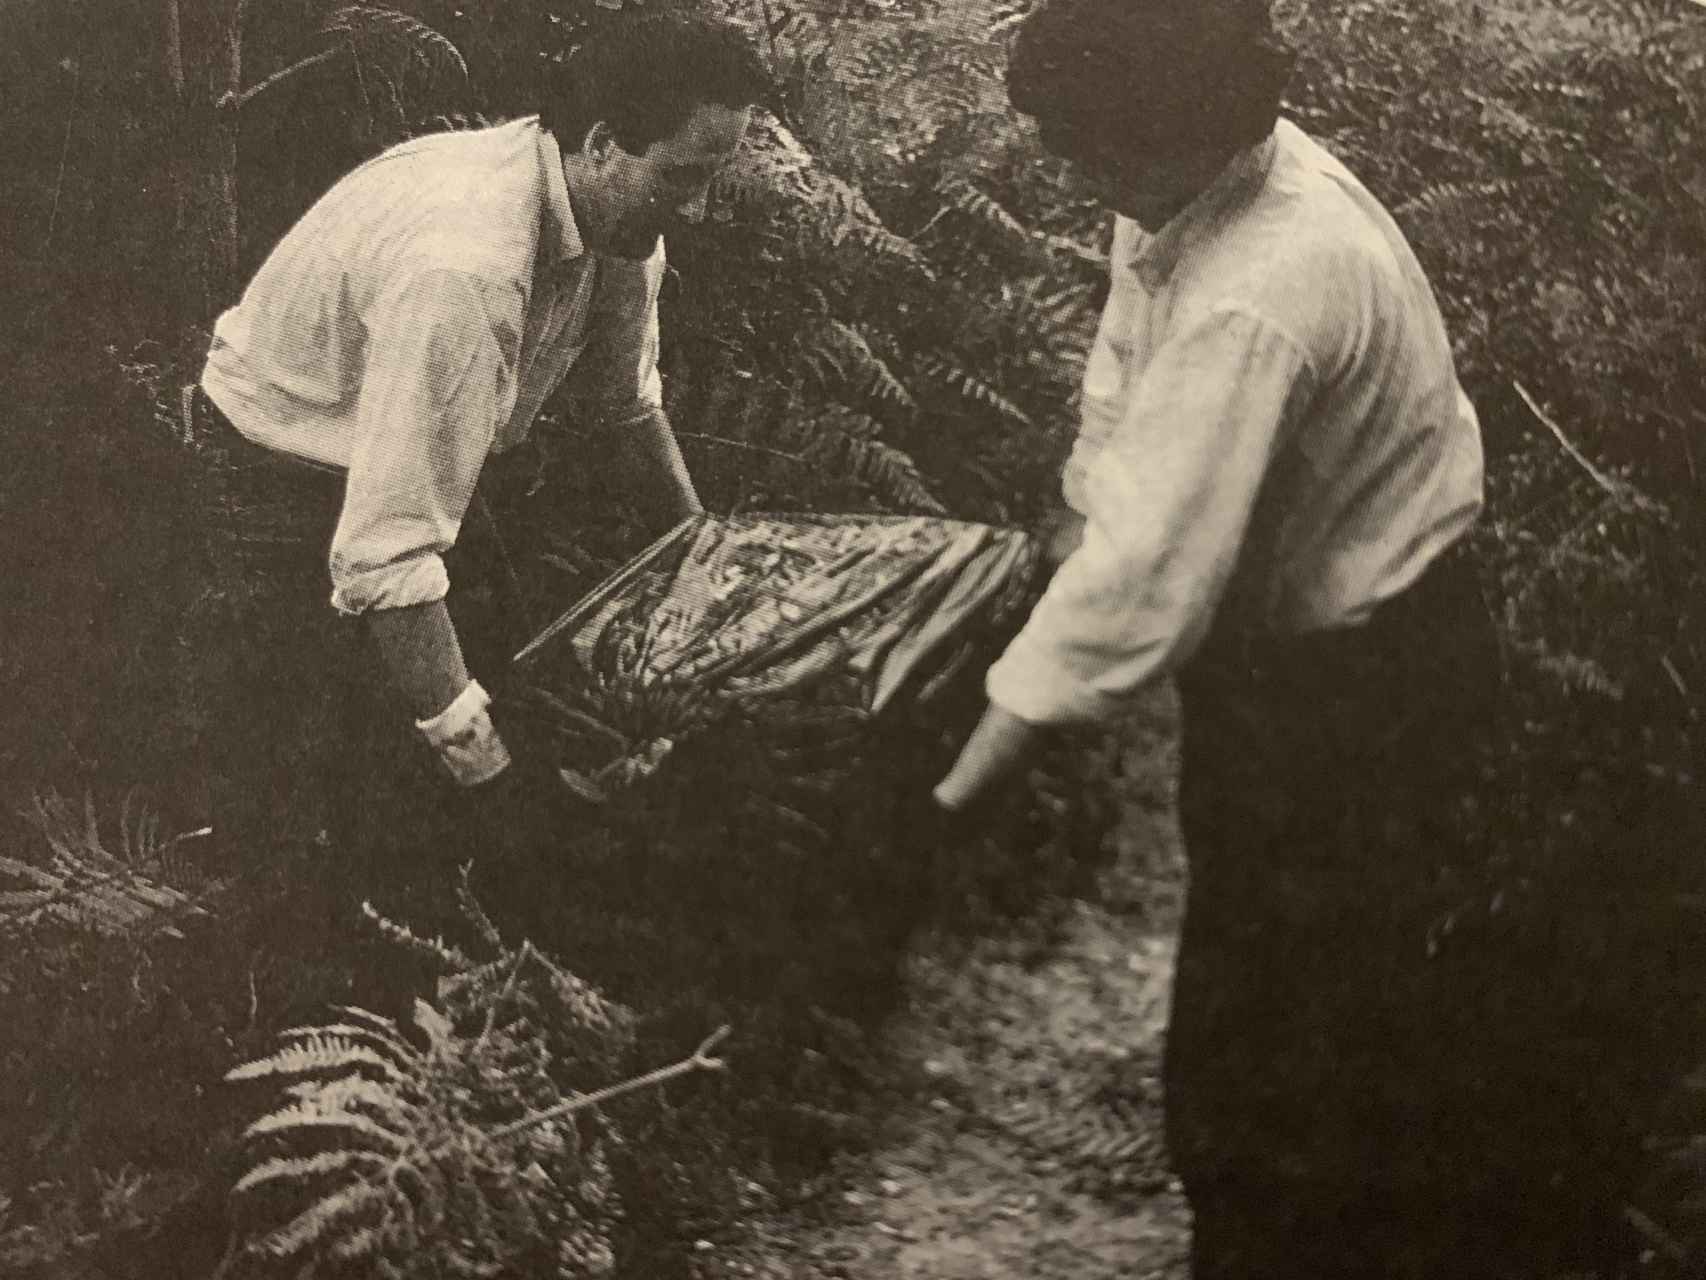 Ricardo Arques (izquierda) y Melchor Miralles (derecha) sacan el baúl del zulo de los GAL.